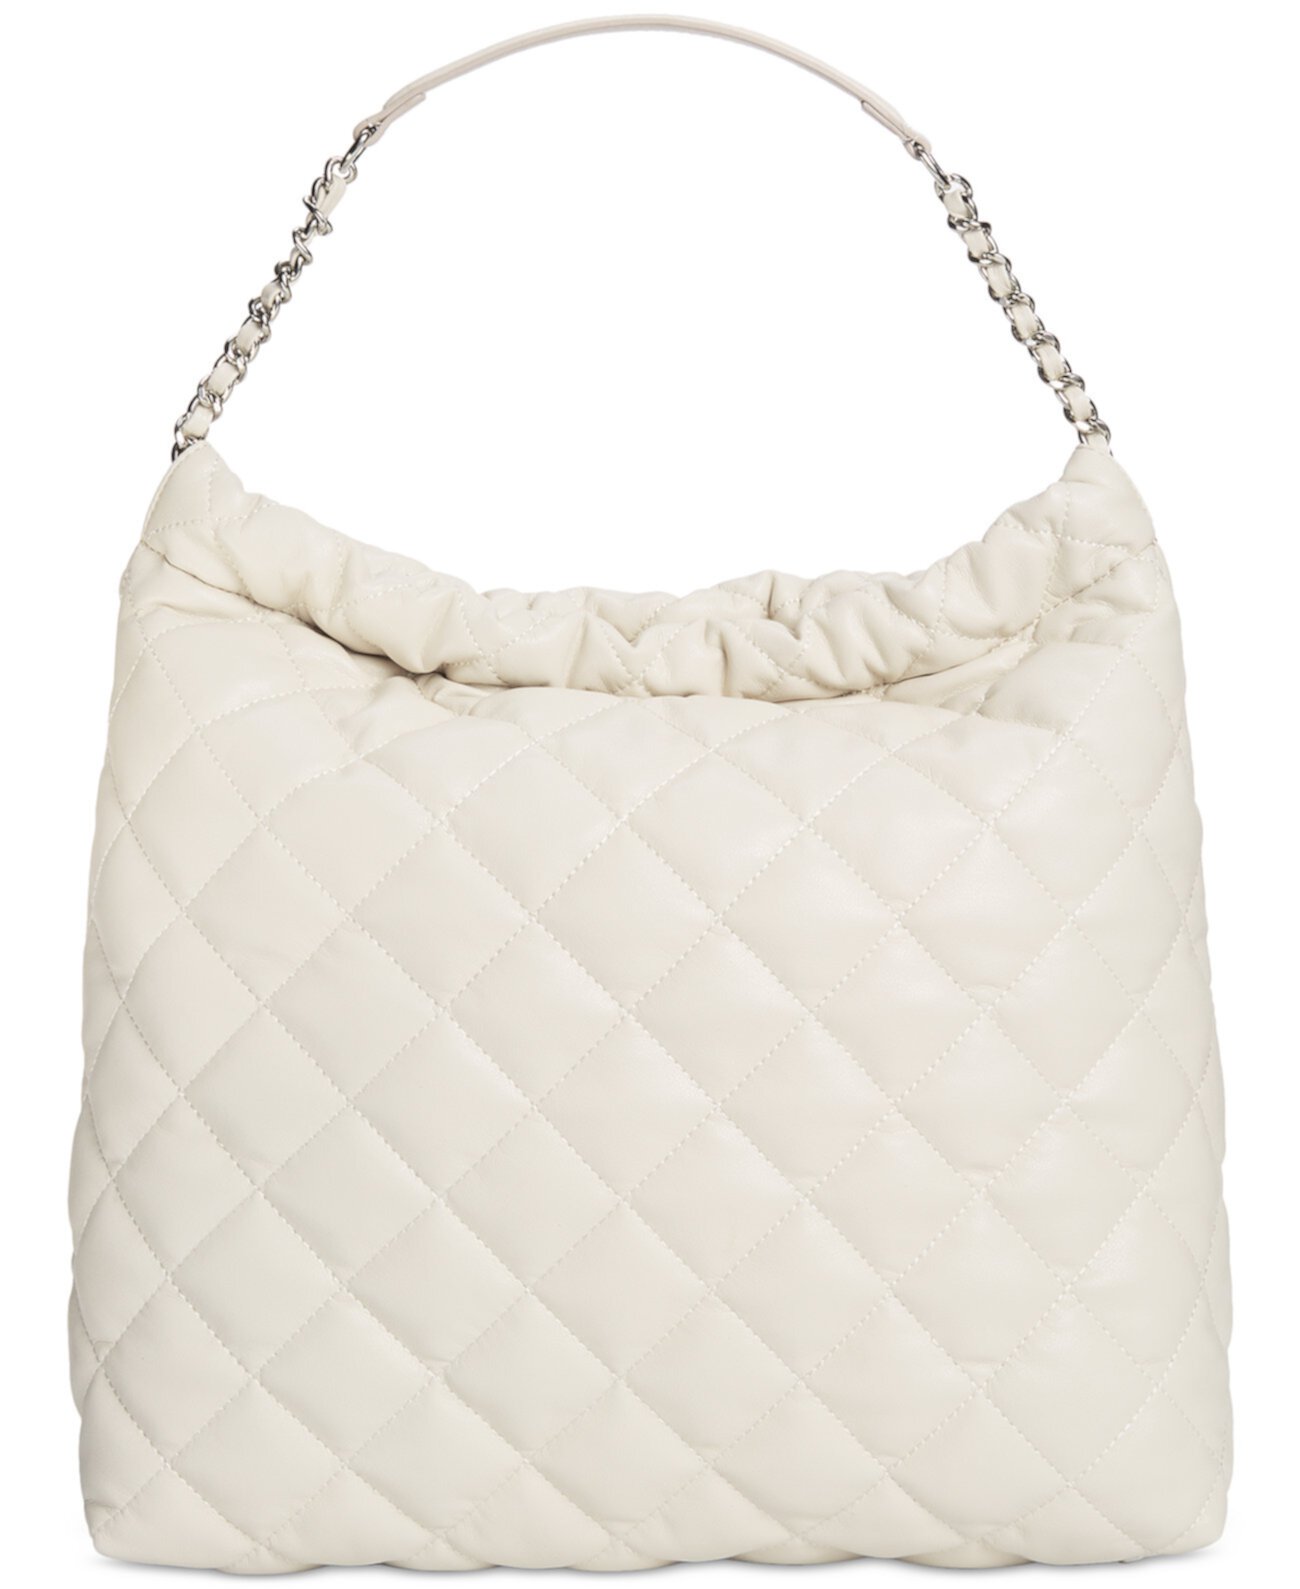 Большая стеганая сумка через плечо Kyliee из искусственной кожи, созданная для Macy's I.N.C. International Concepts